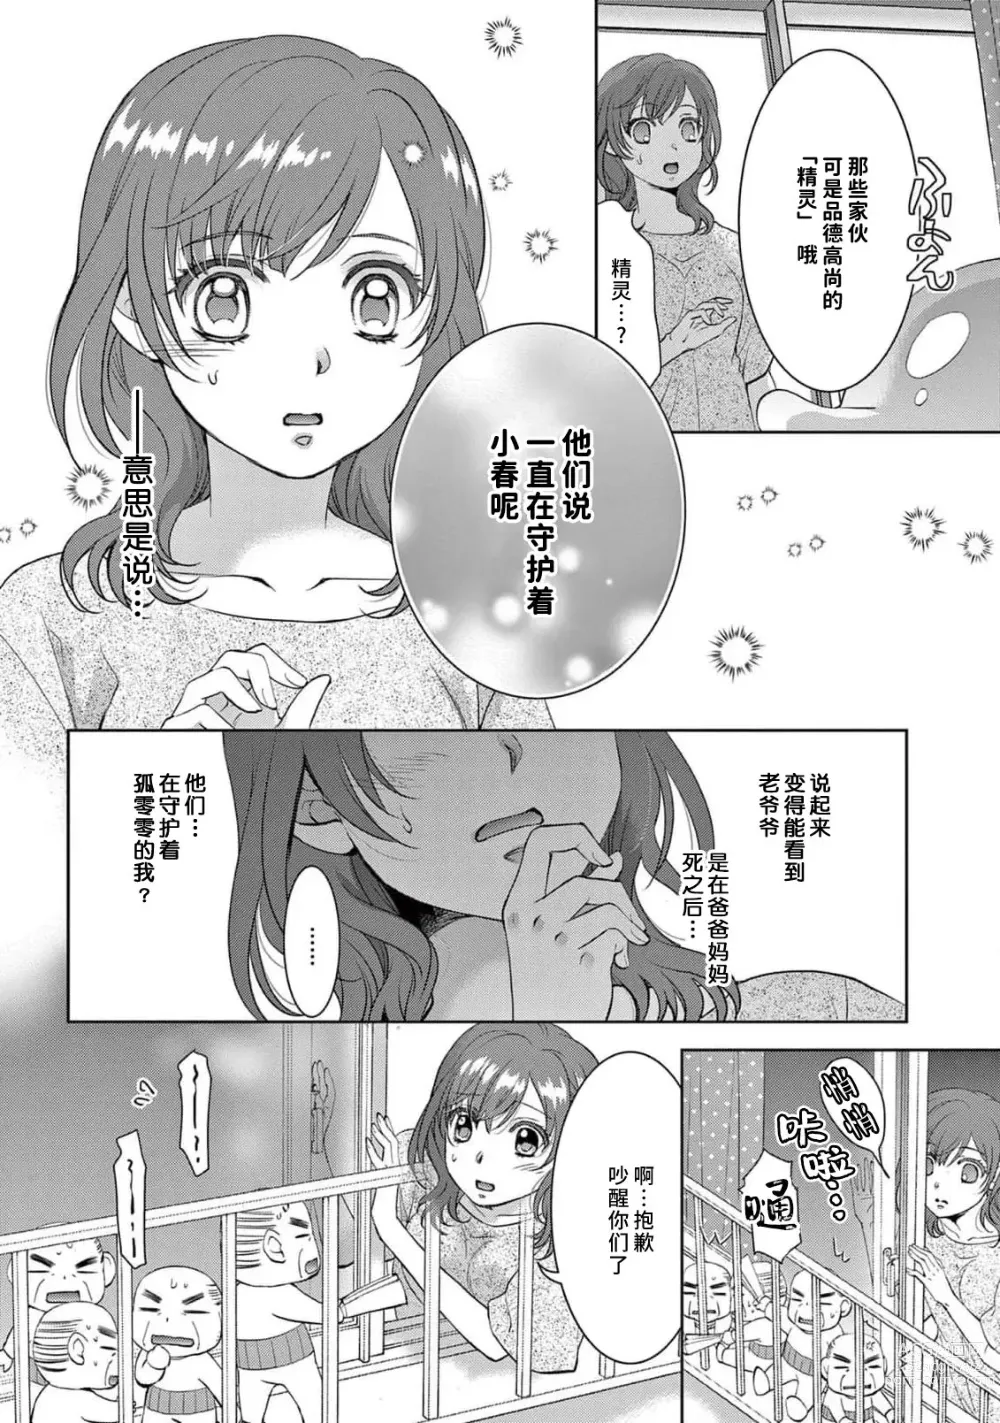 Page 104 of manga 贫困女子和史莱姆男子~软绵绵富有弹性的・甜蜜之家~ 1-2